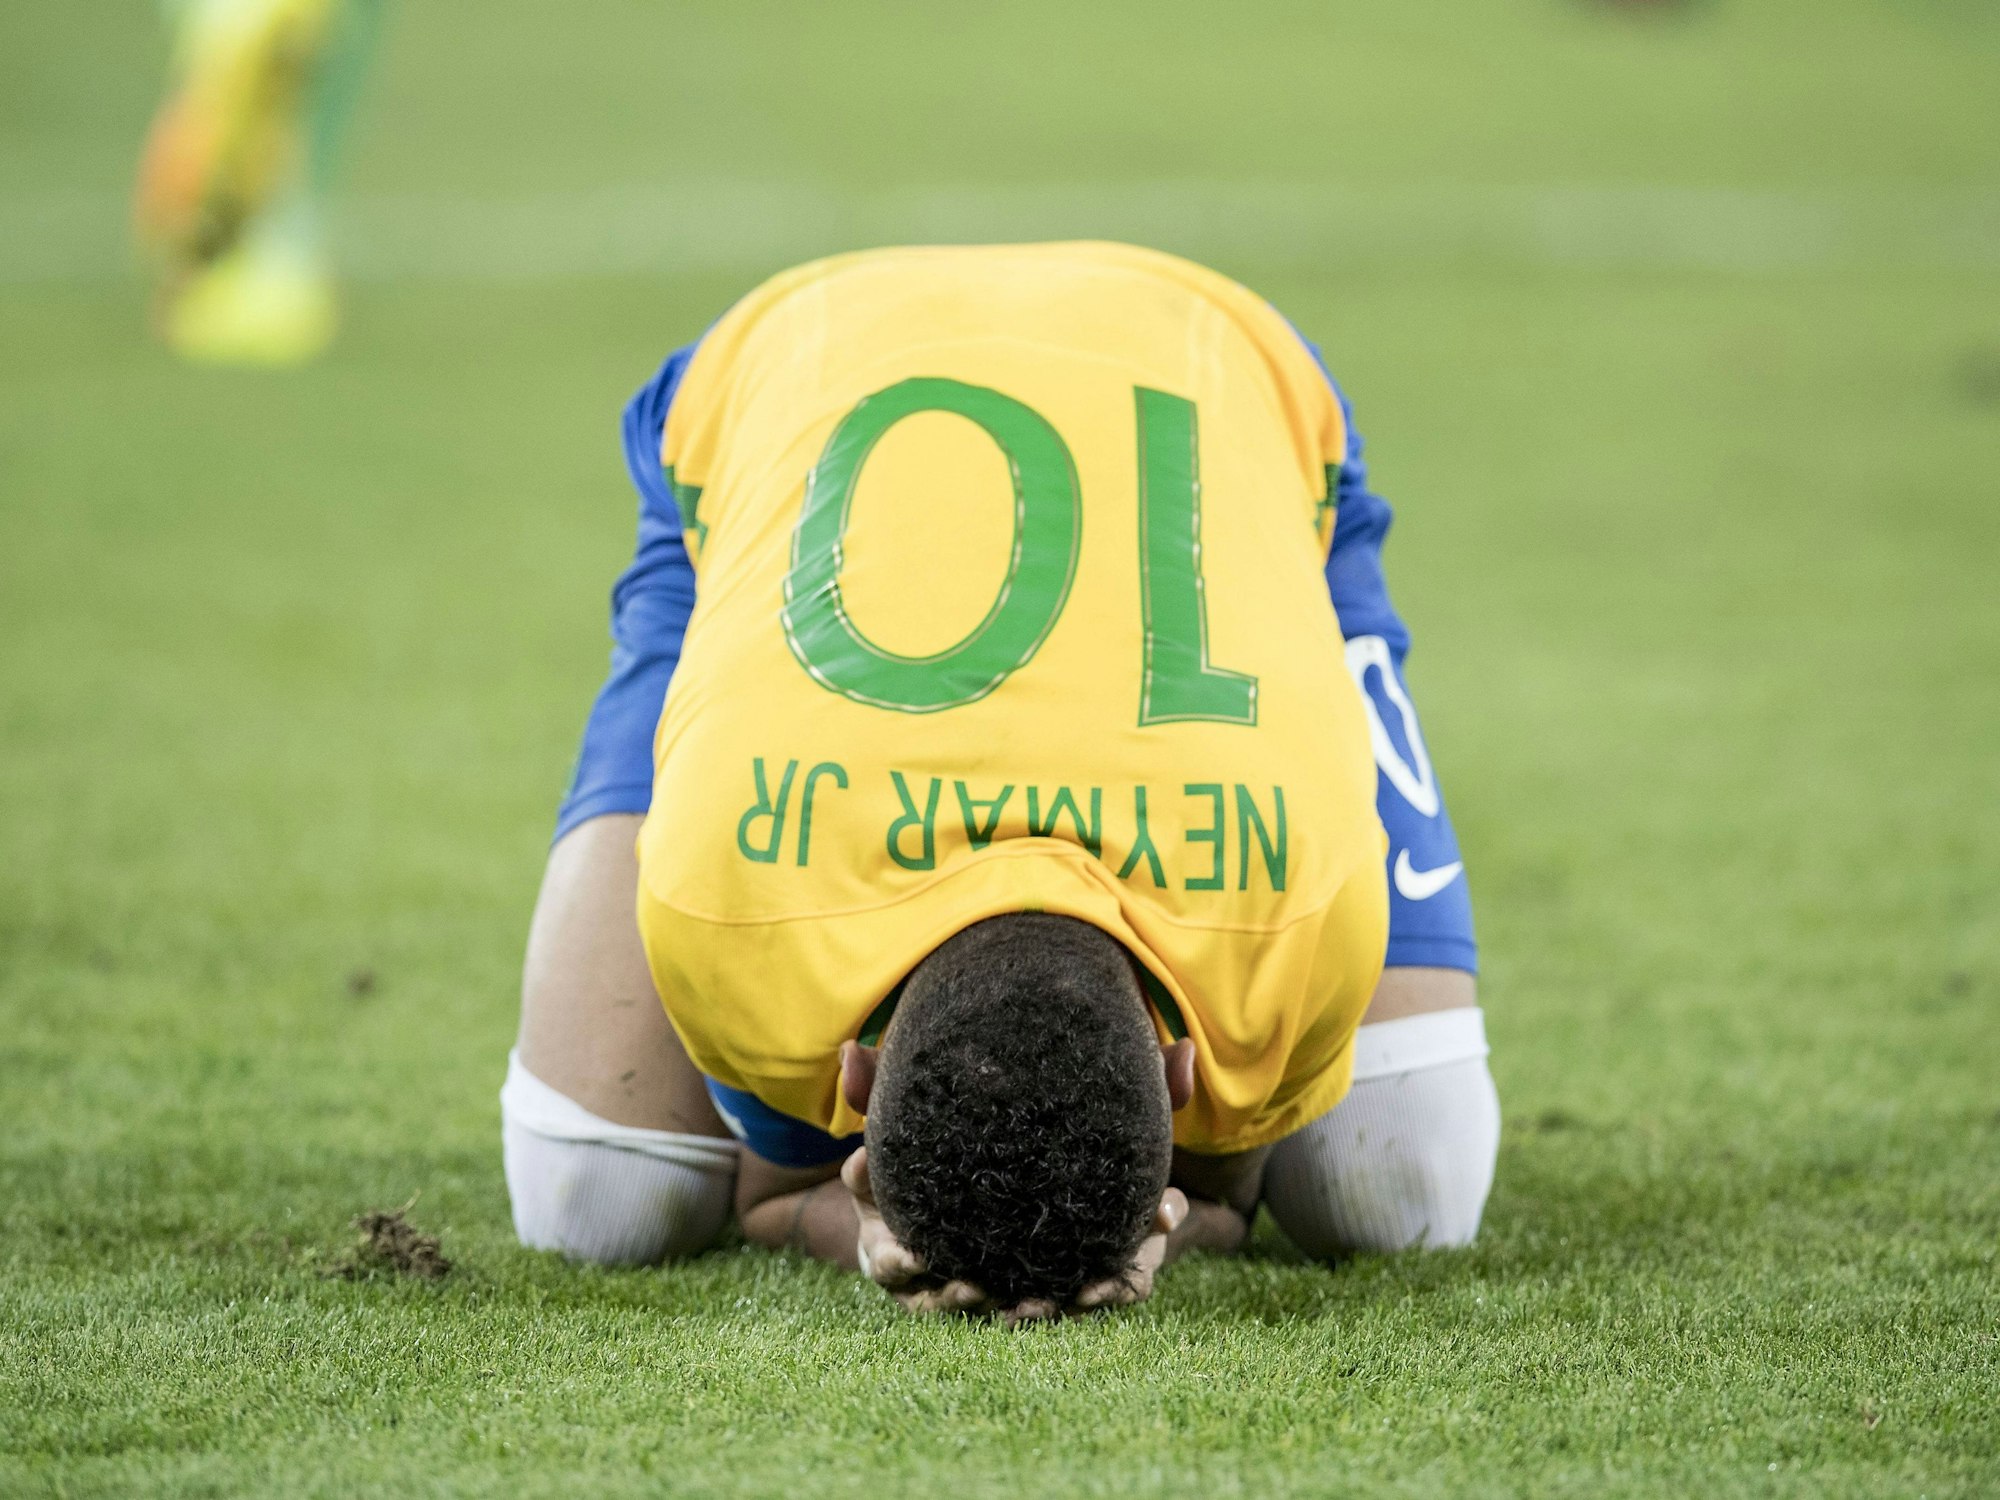 Mittig im Bild kniet Neymar Jr. im Trikot der Brasilianischen Selecao mit der Nummer 10 und legt seinen Kopf auf den Boden. Er hat das Gesicht in seinen Händen vergraben.